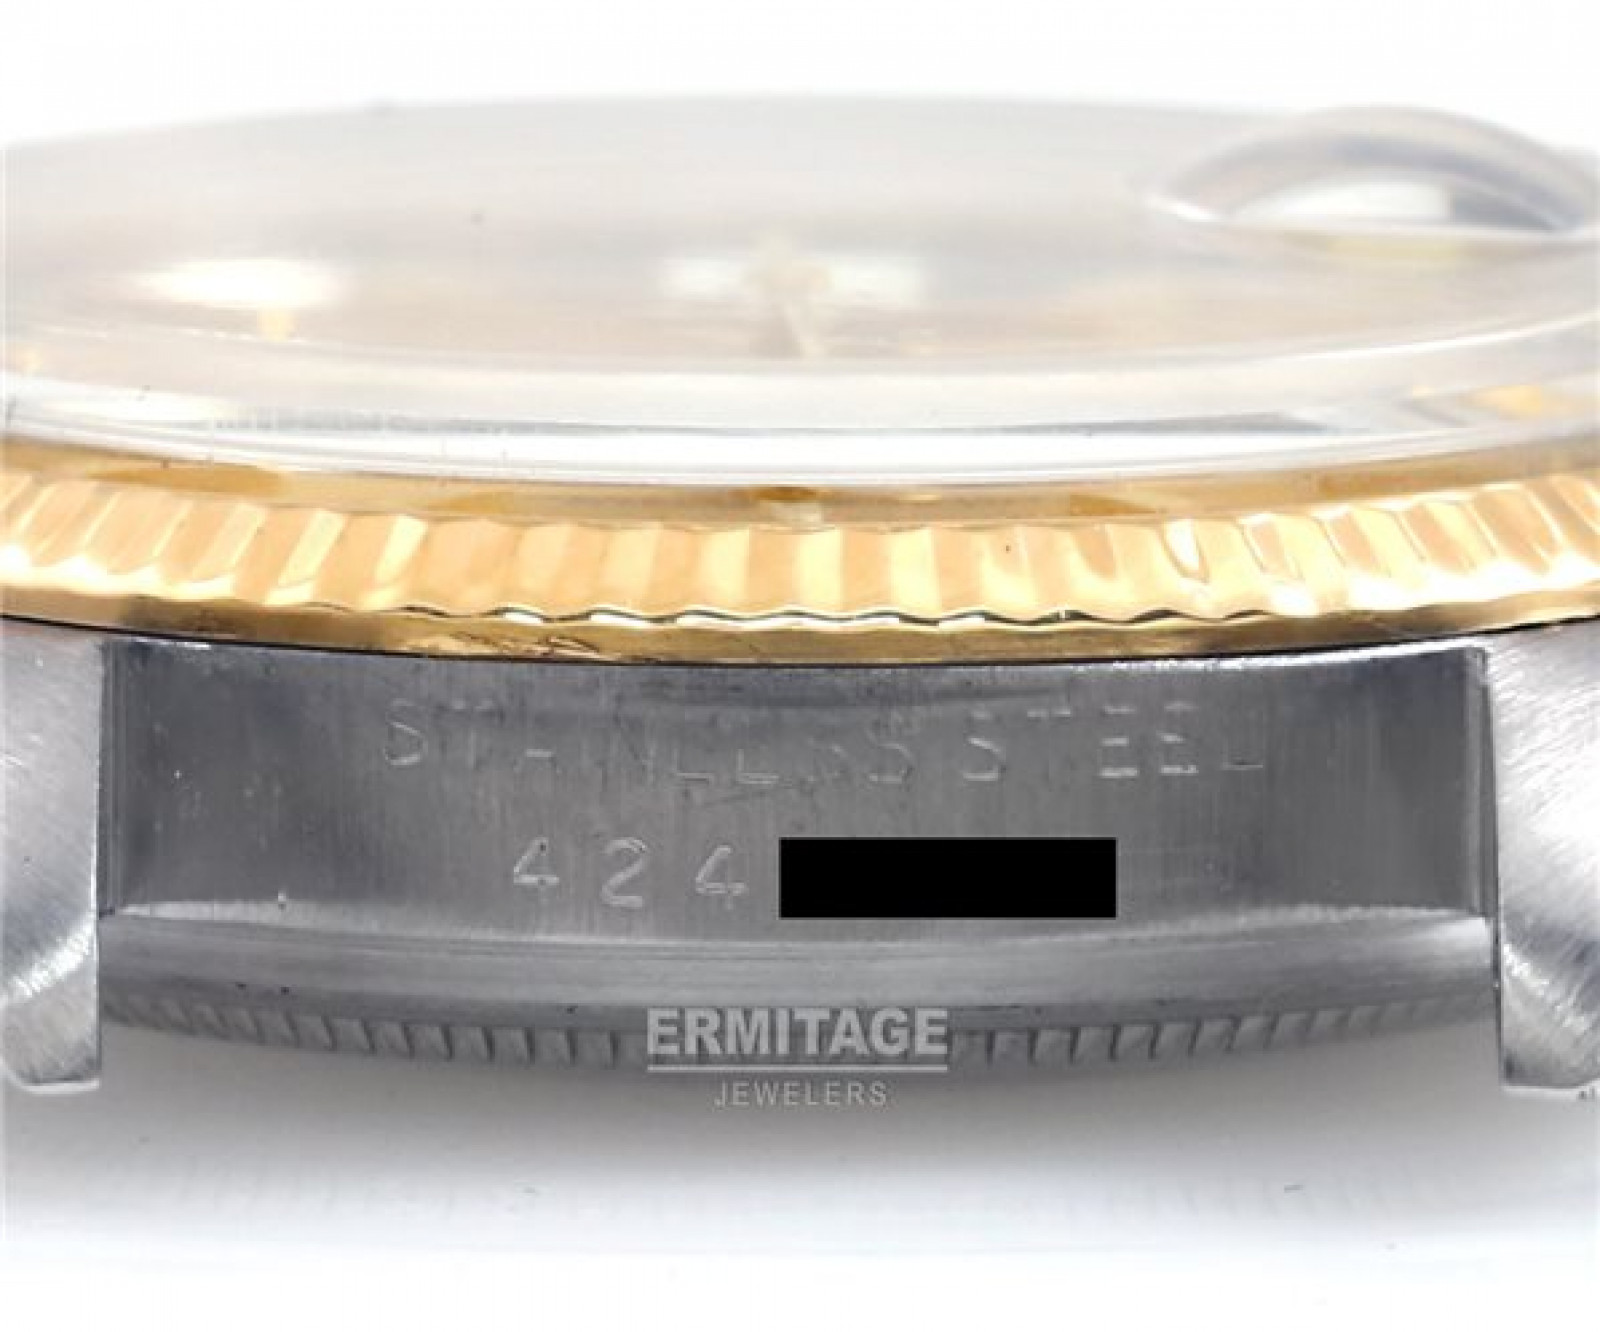 Vintage Rare Rolex Datejust 1601 Gold & Steel Year 1975